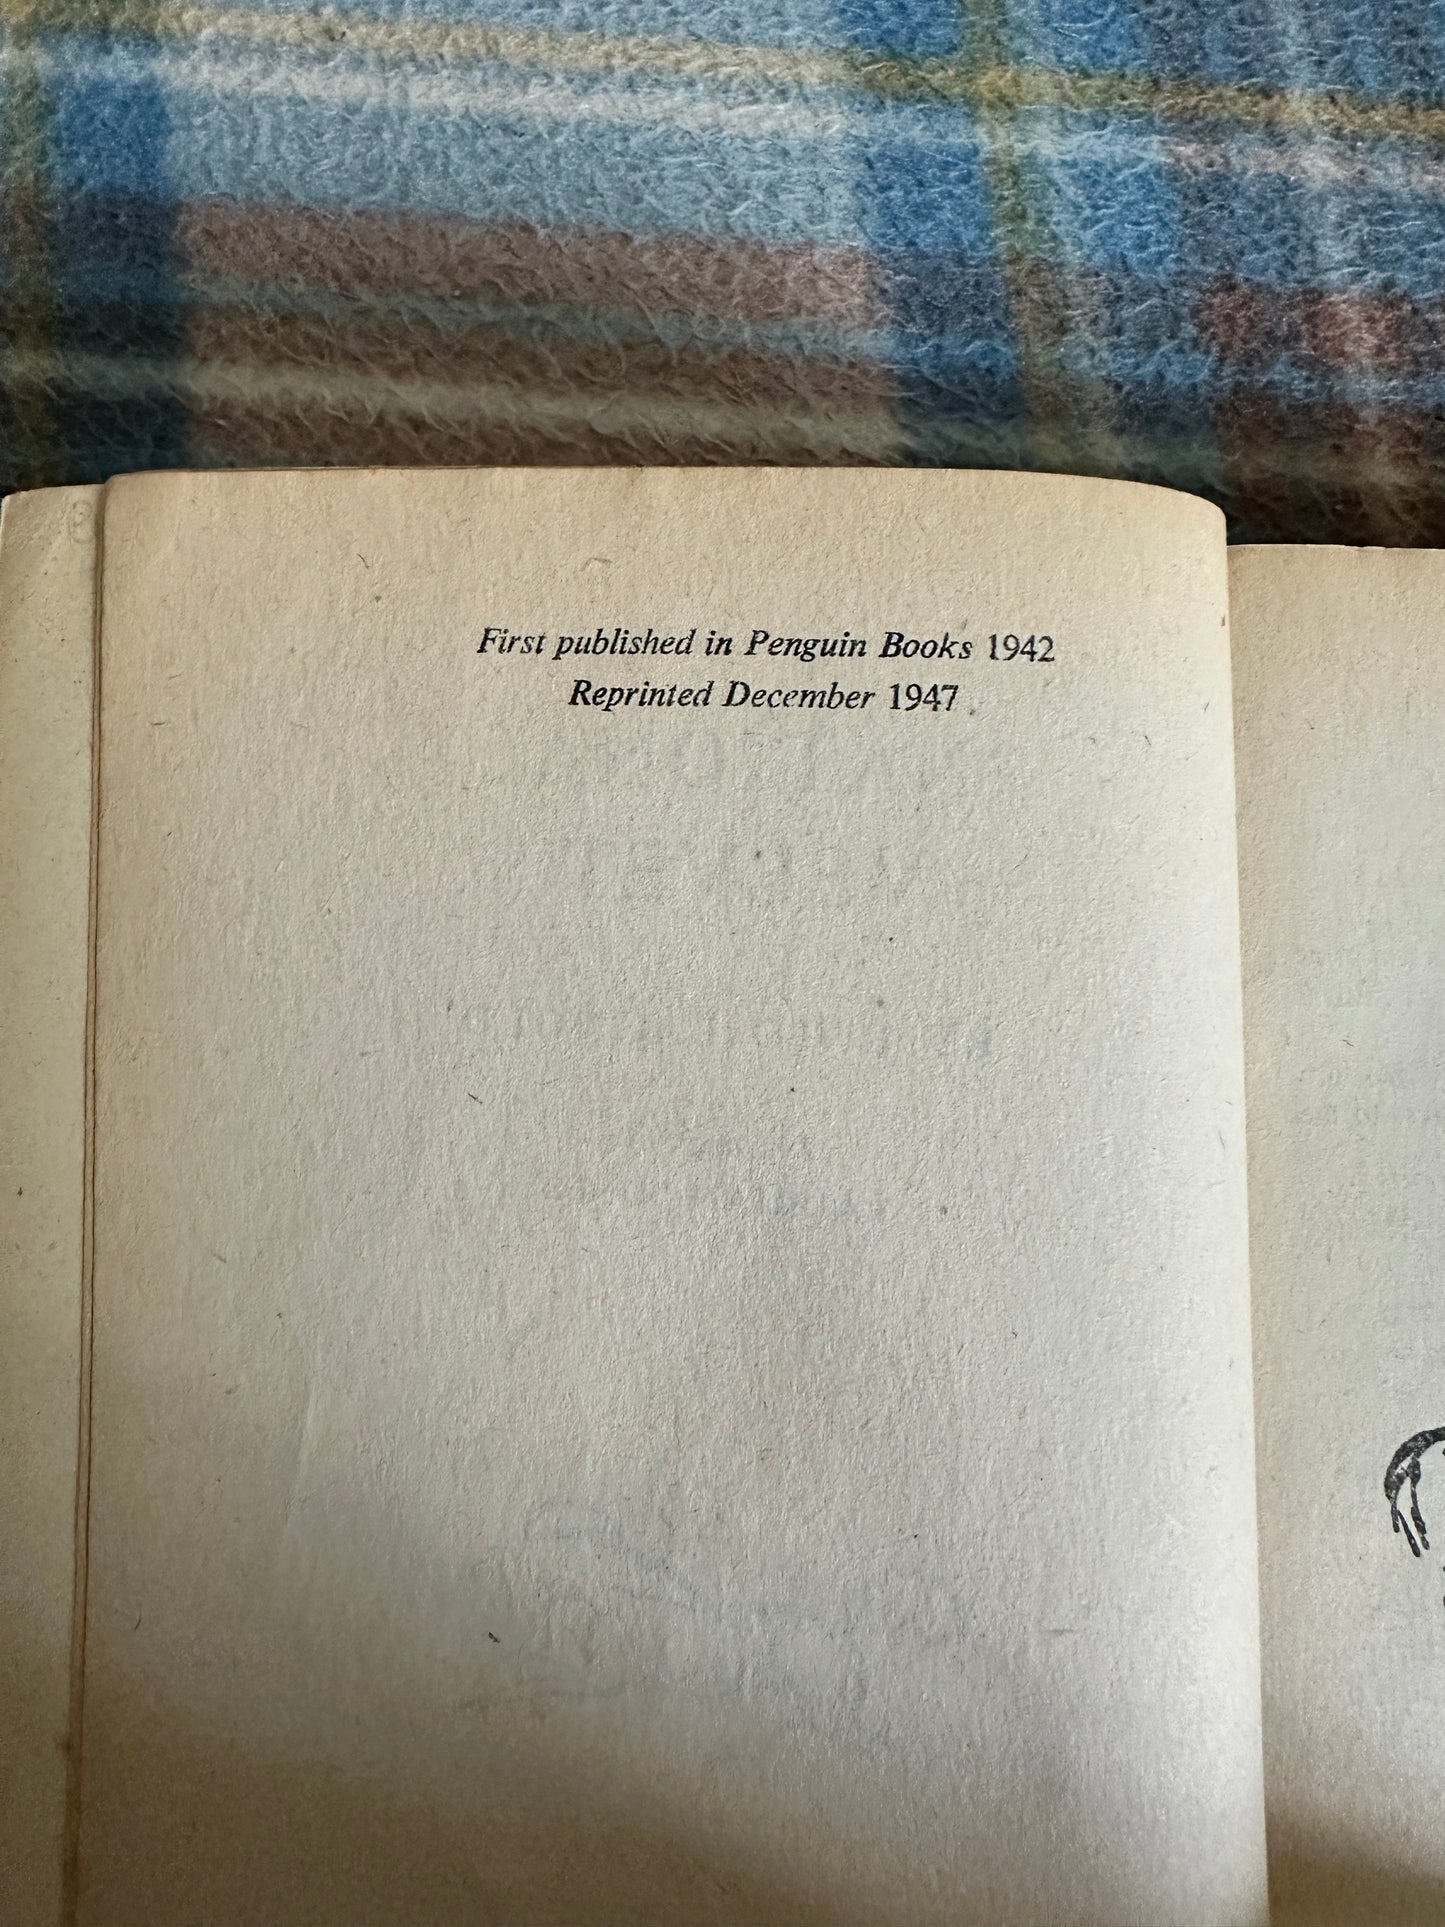 1947 National Velvet - Enid Bagnold(Illust Laurian Jones)Penguin Books